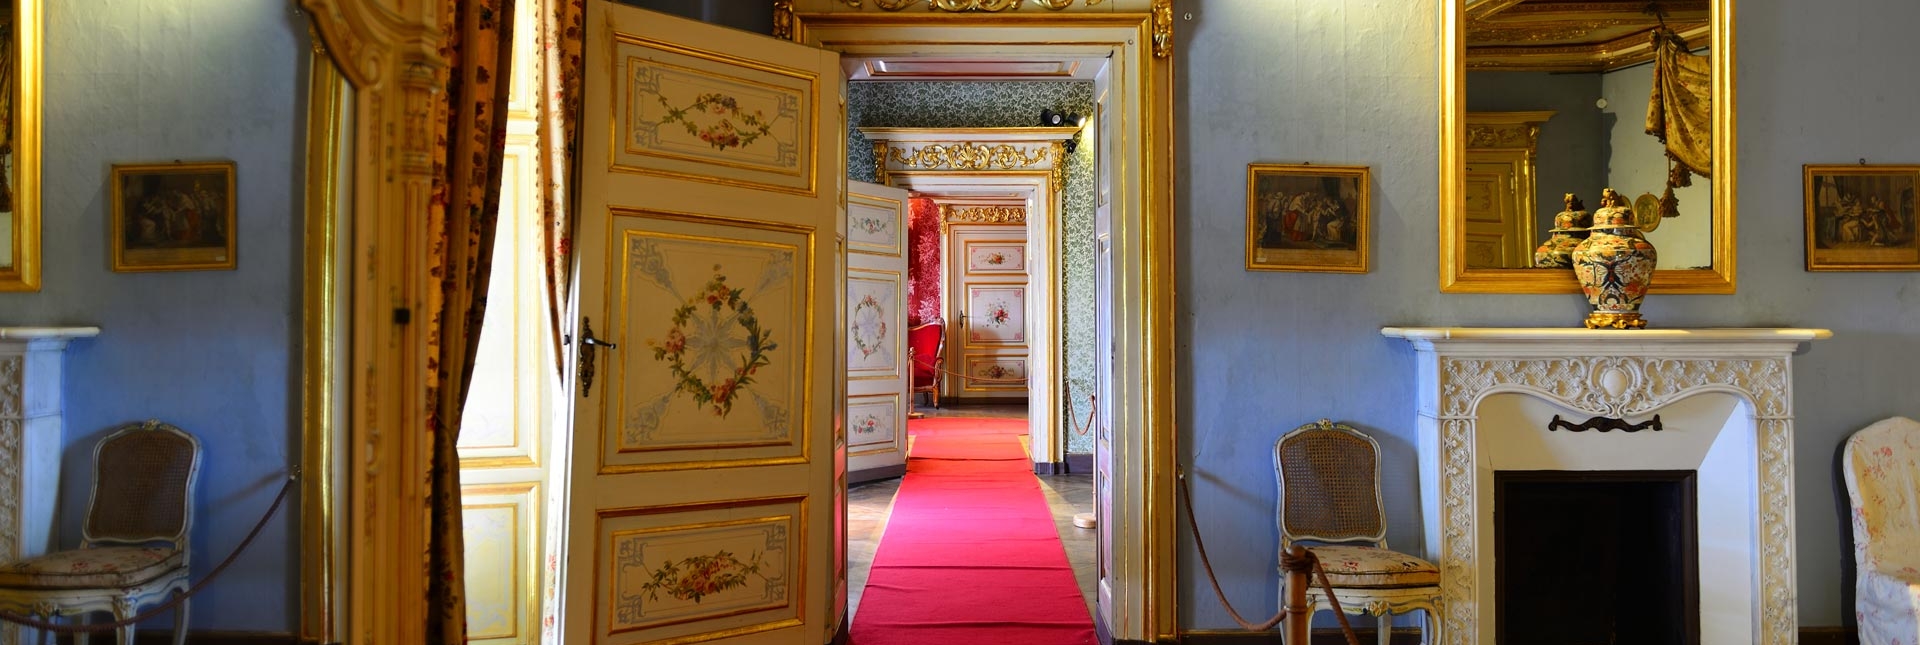 Appartamenti Reali del Castello della Mandria - Foto di Piercarlo Ferrero